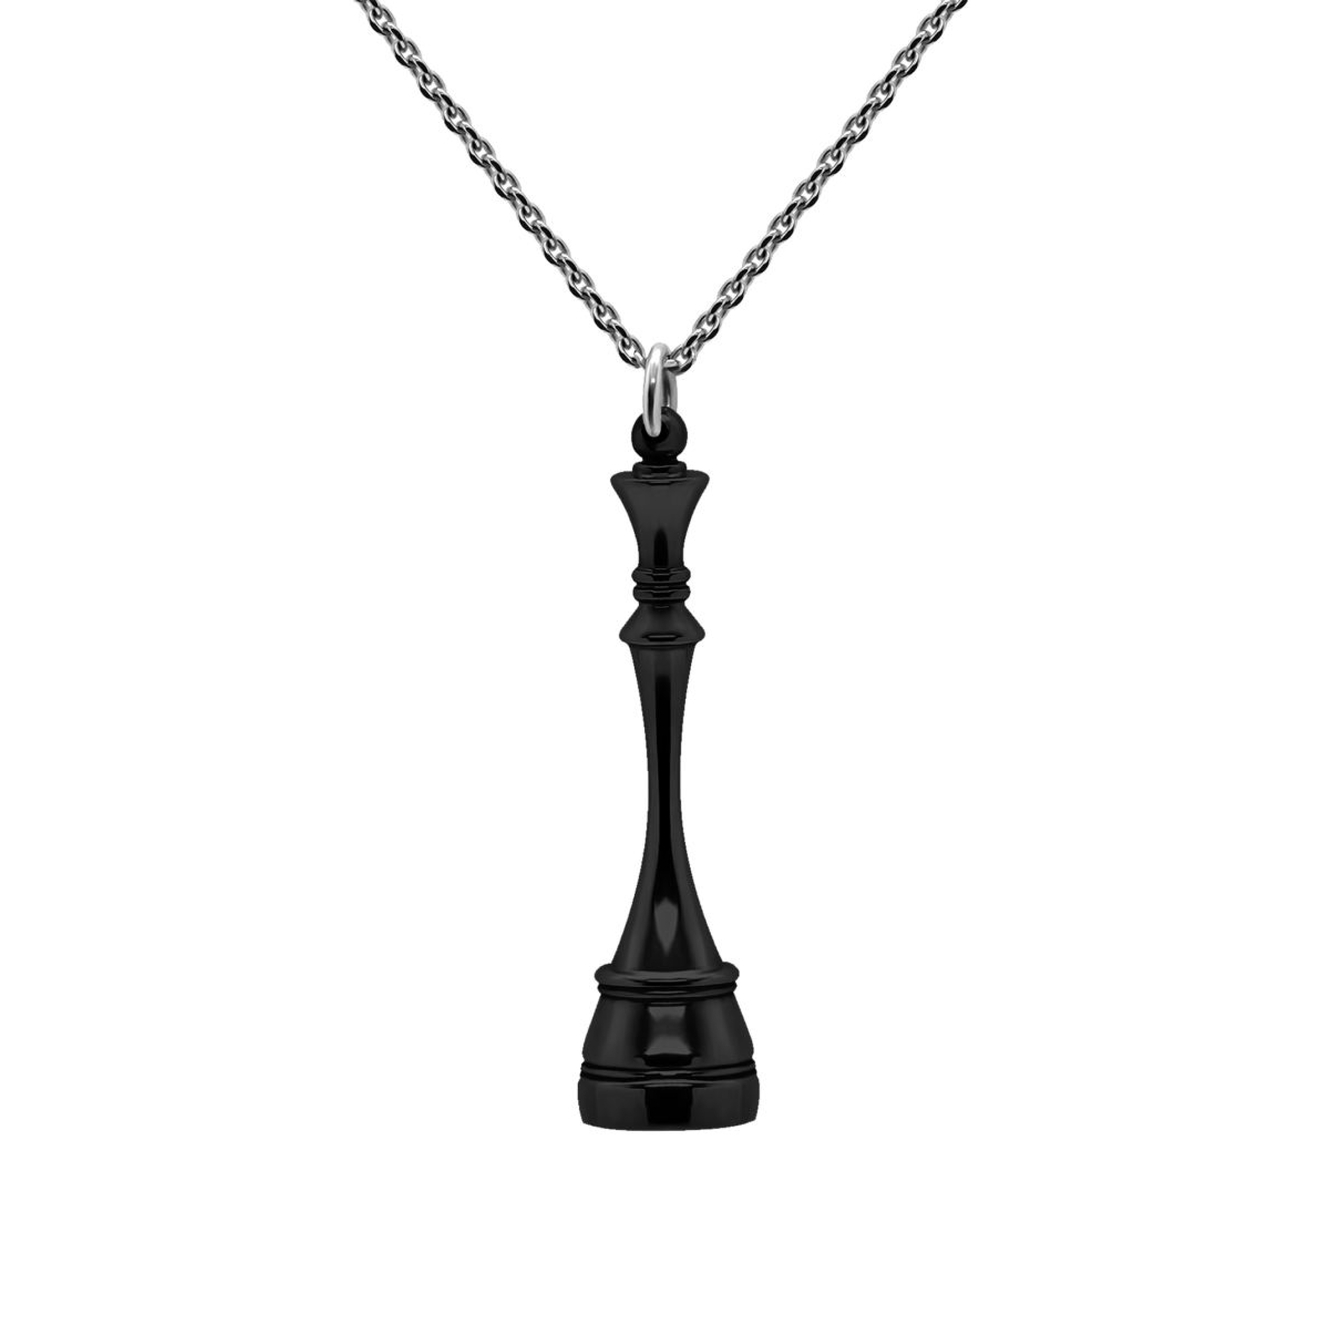 Prosto Jewelry Подвеска Королева Black из серебра подвеска серебряная prosto jewelry с речным жемчугом 1 шт